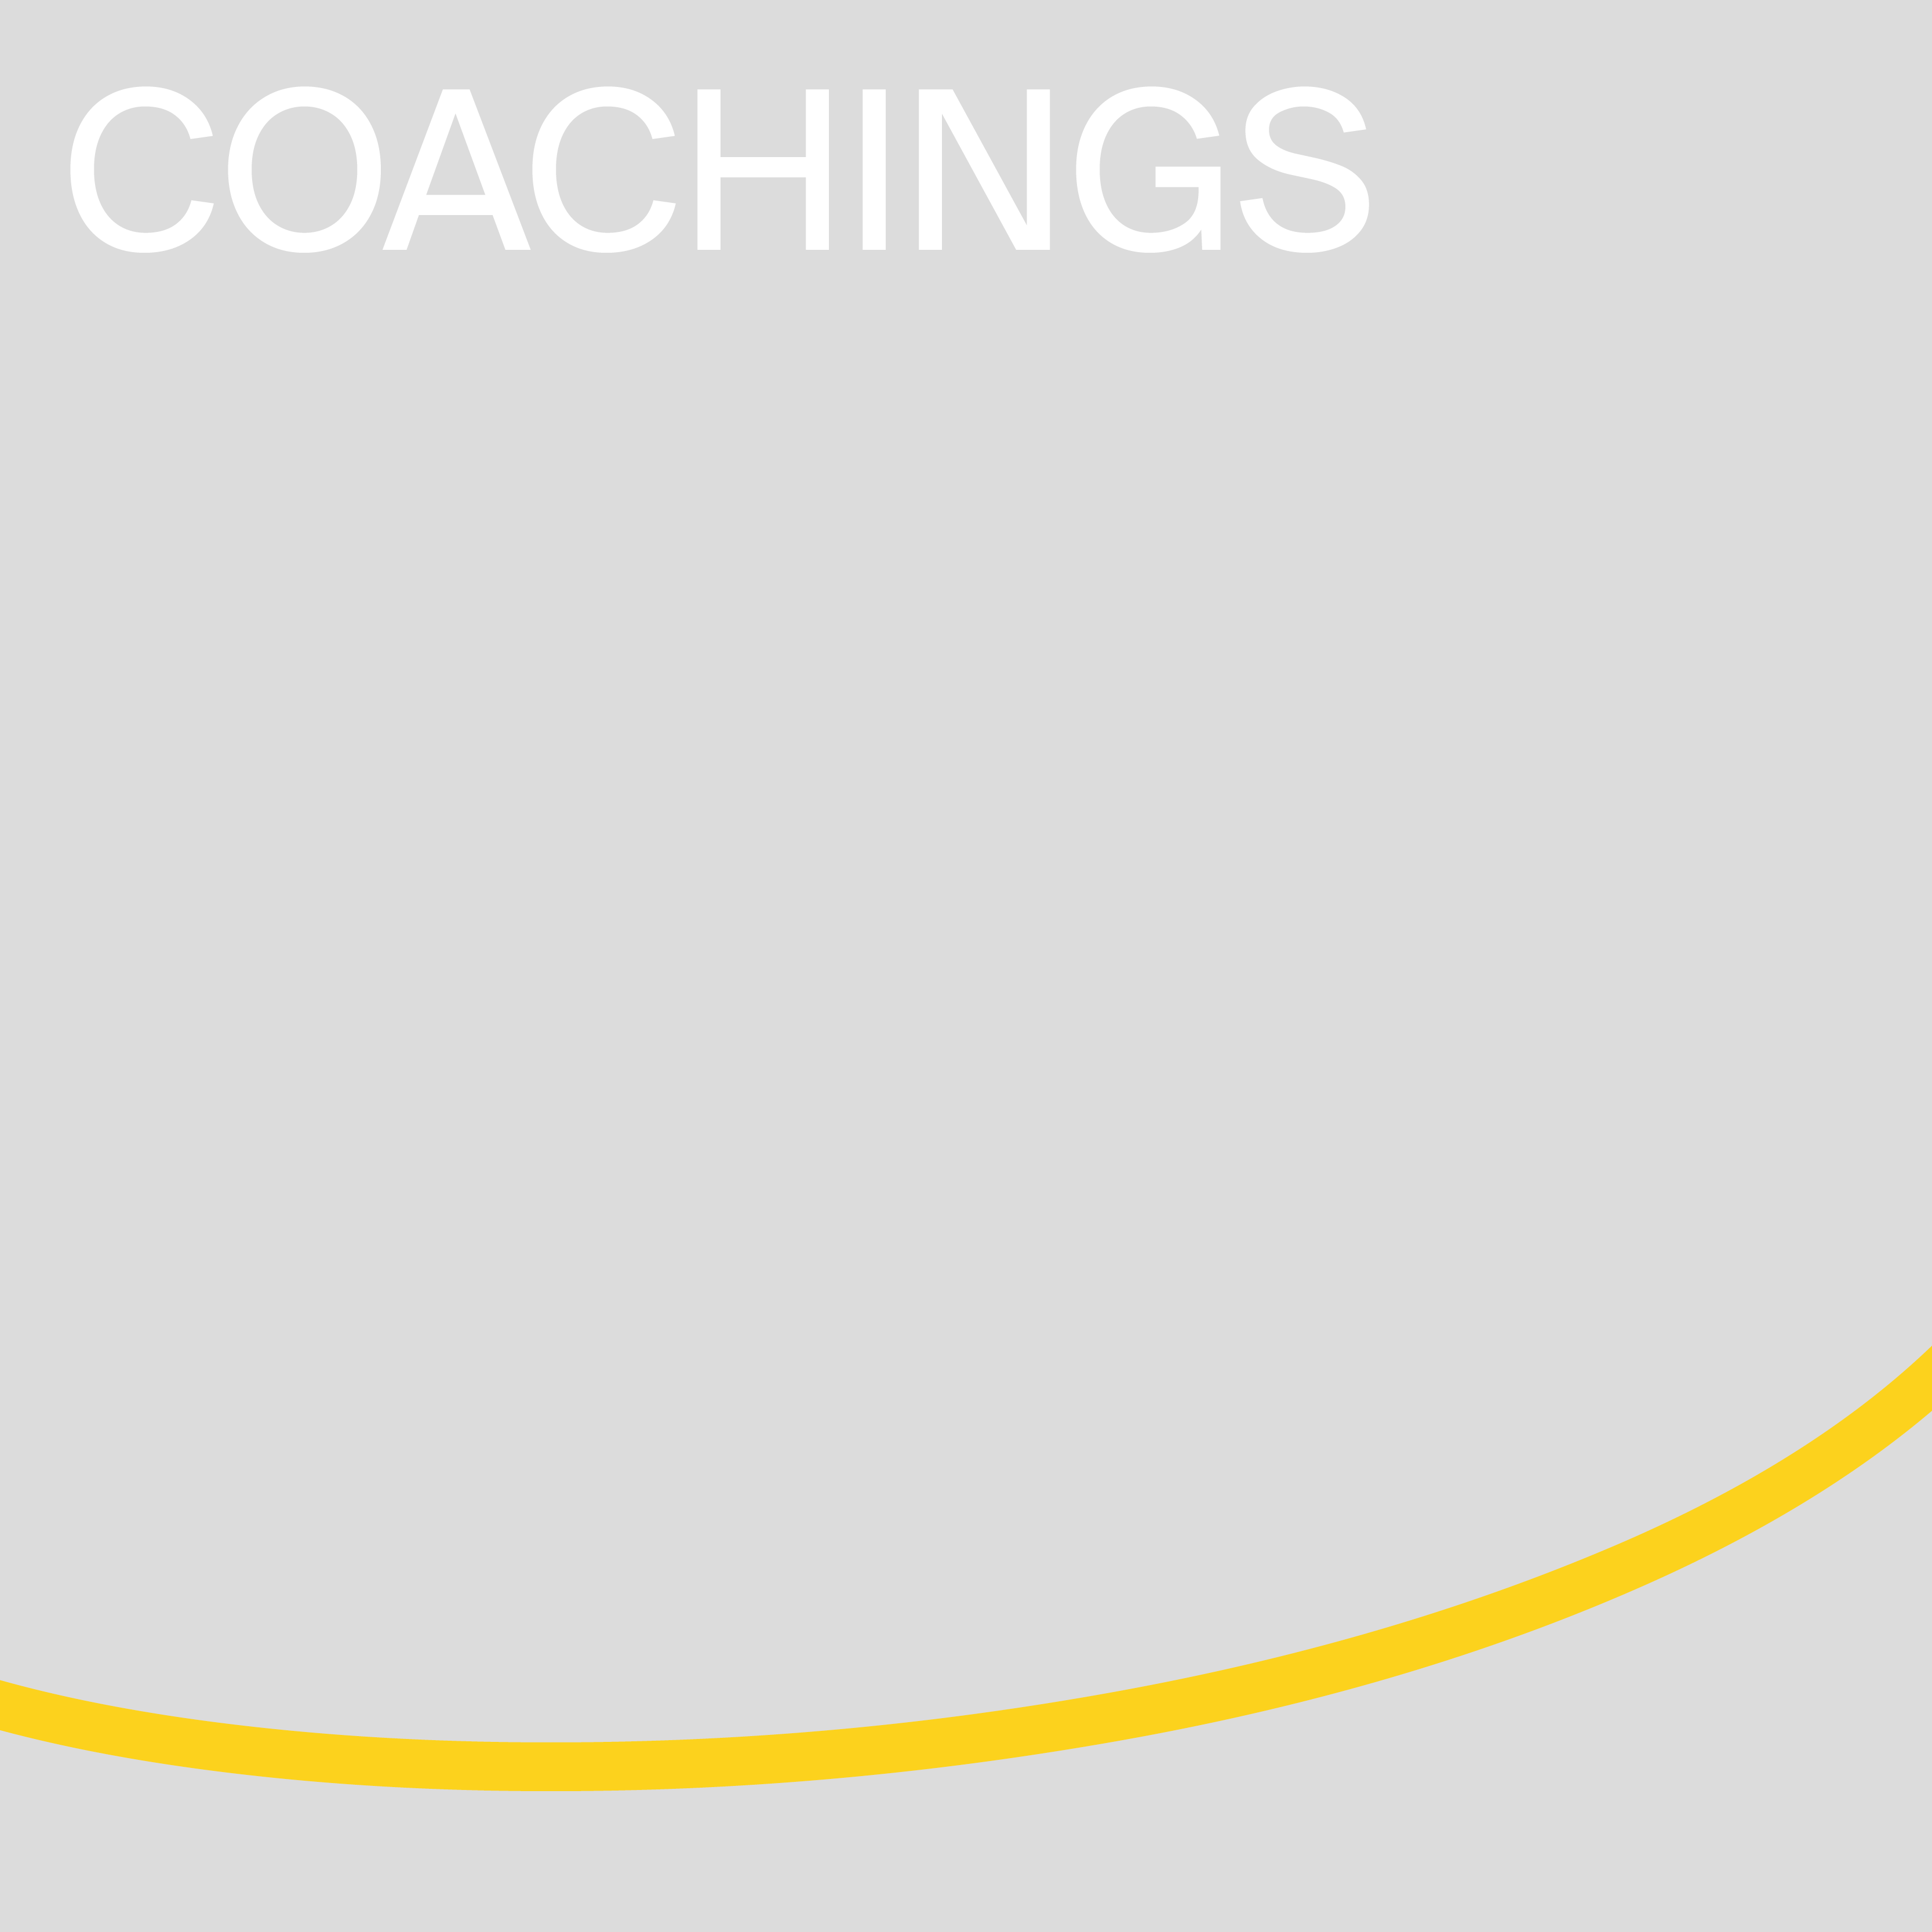 Coachings banner